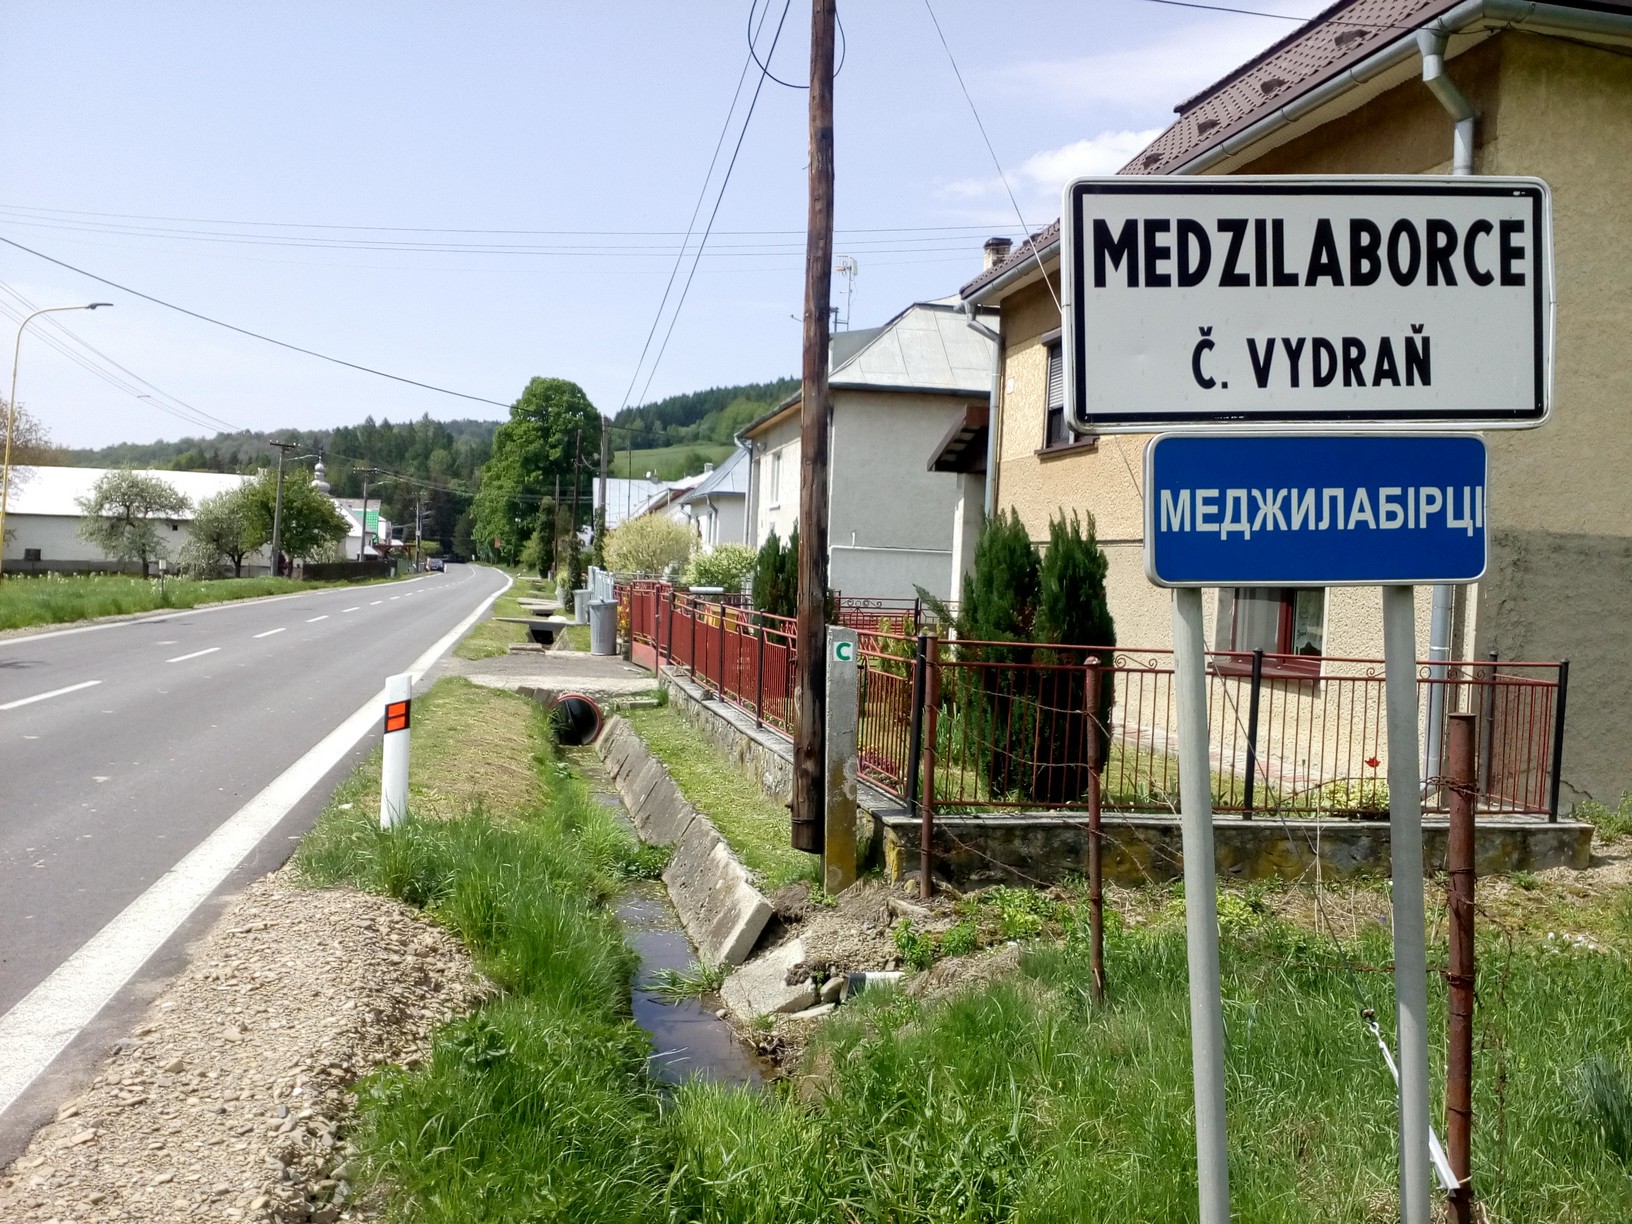 Wjazd do Medzilaborców (rusiń. Меджілабірці) z dwujęzyczną tablicą nazwy miejscowości